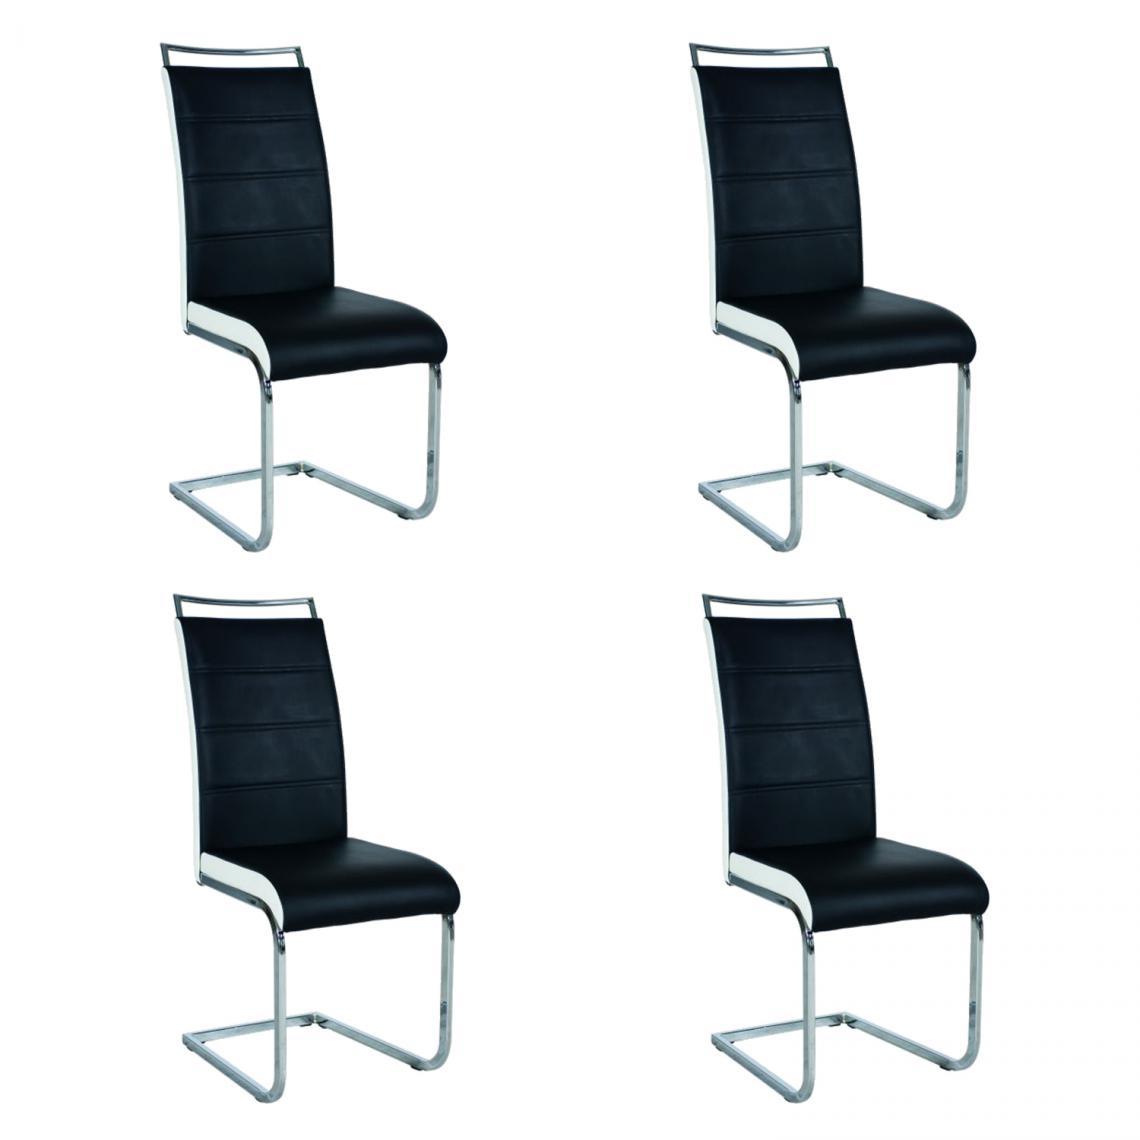 Hucoco - SHYRA - Lot de 4 chaises style moderne - 102x41x42 cm - Similicuir - Chaise salle à manger - Noir - Chaises